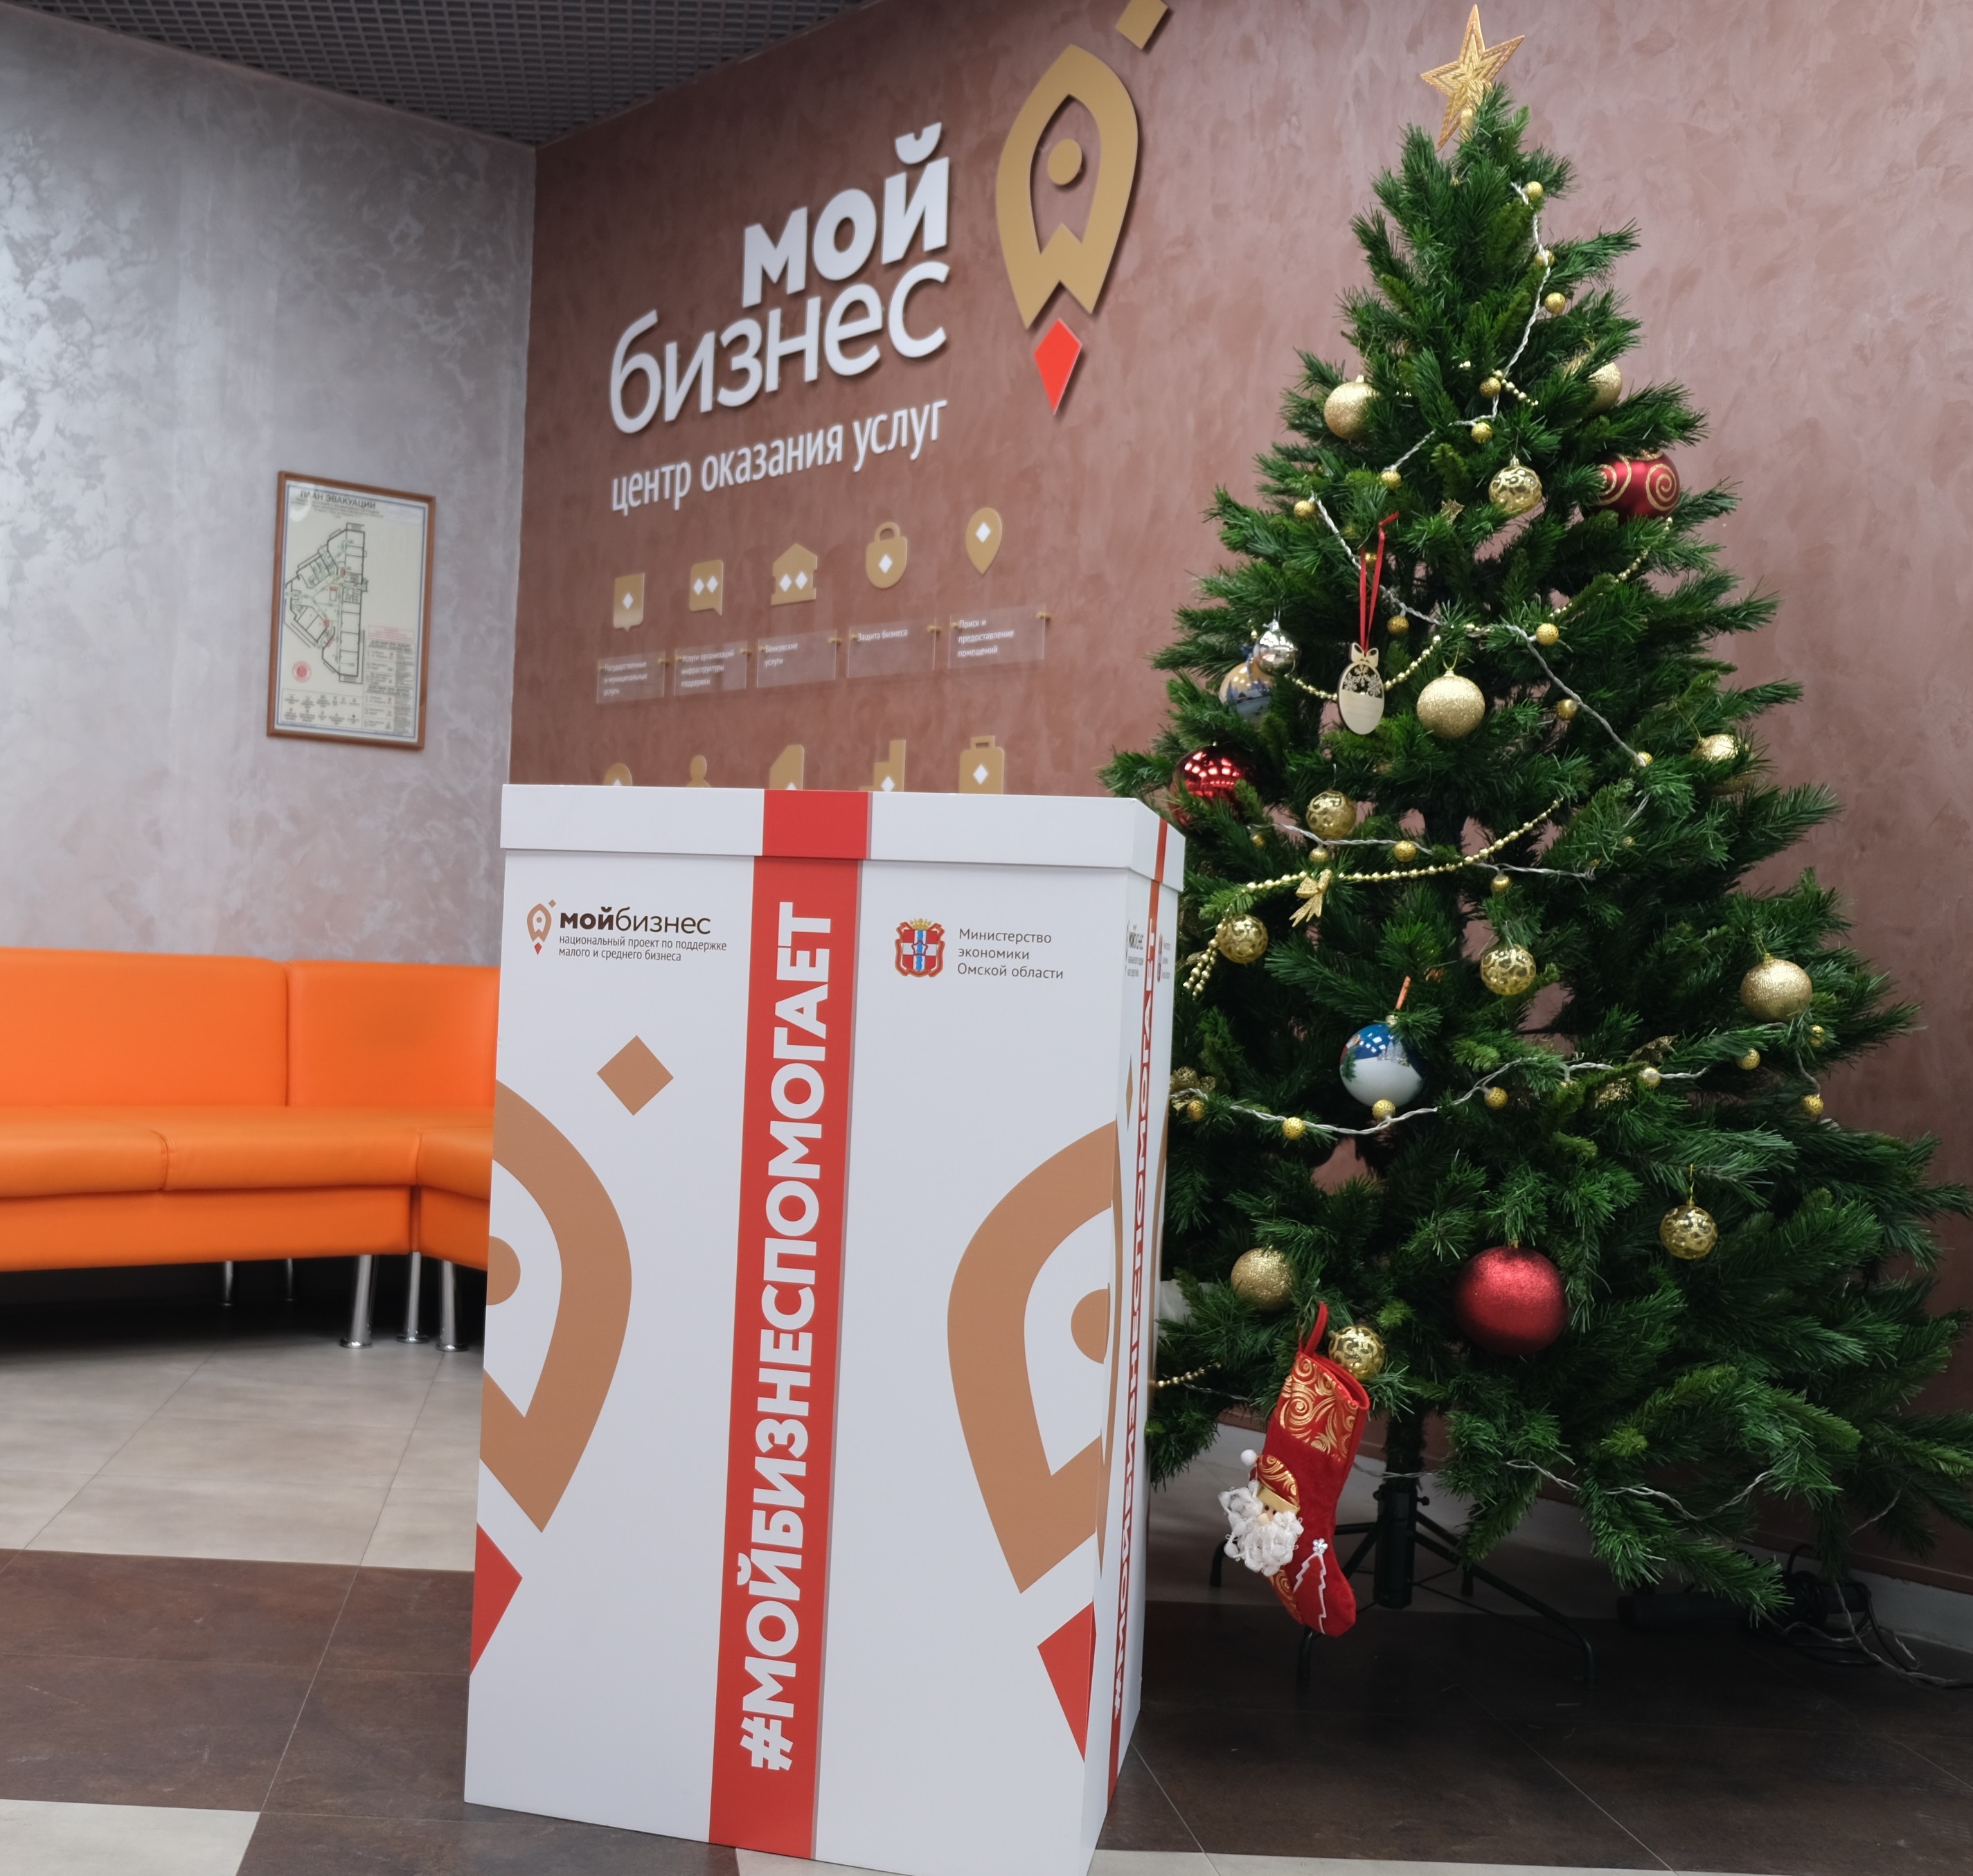 Центр «Мой бизнес» Омской области и парк «Вокруг света» предлагает присоединиться к акции «Новый год вокруг света»